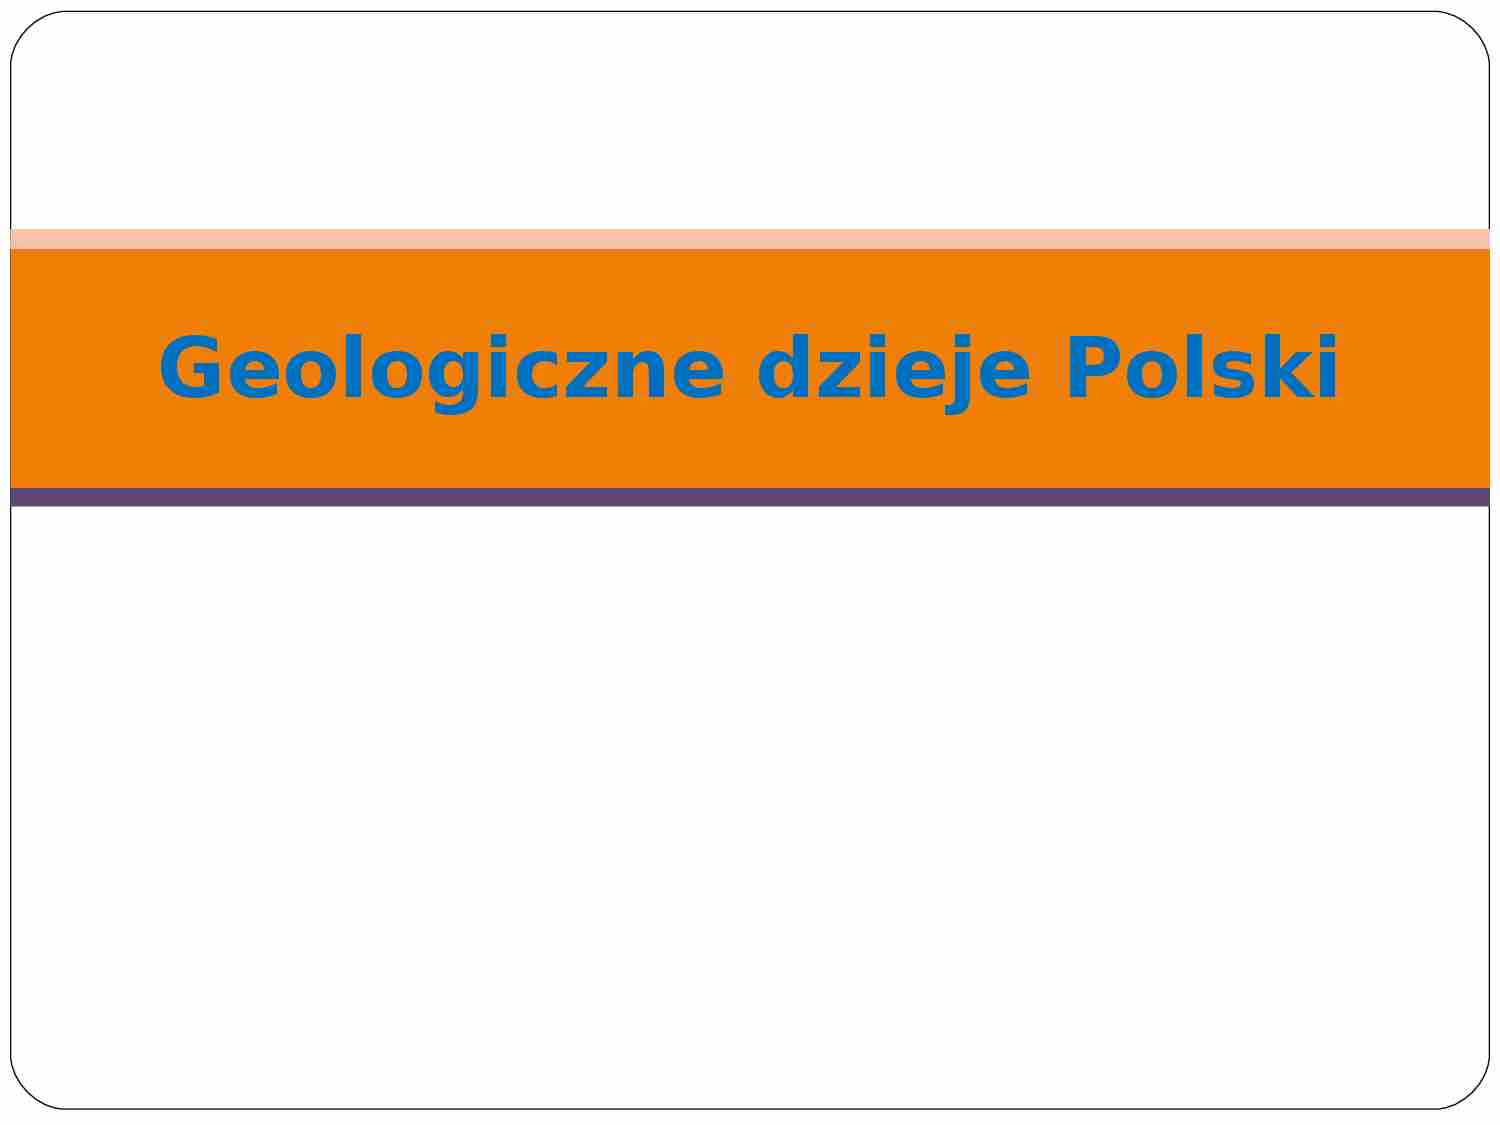 Geologiczne dzieje Polski - strona 1